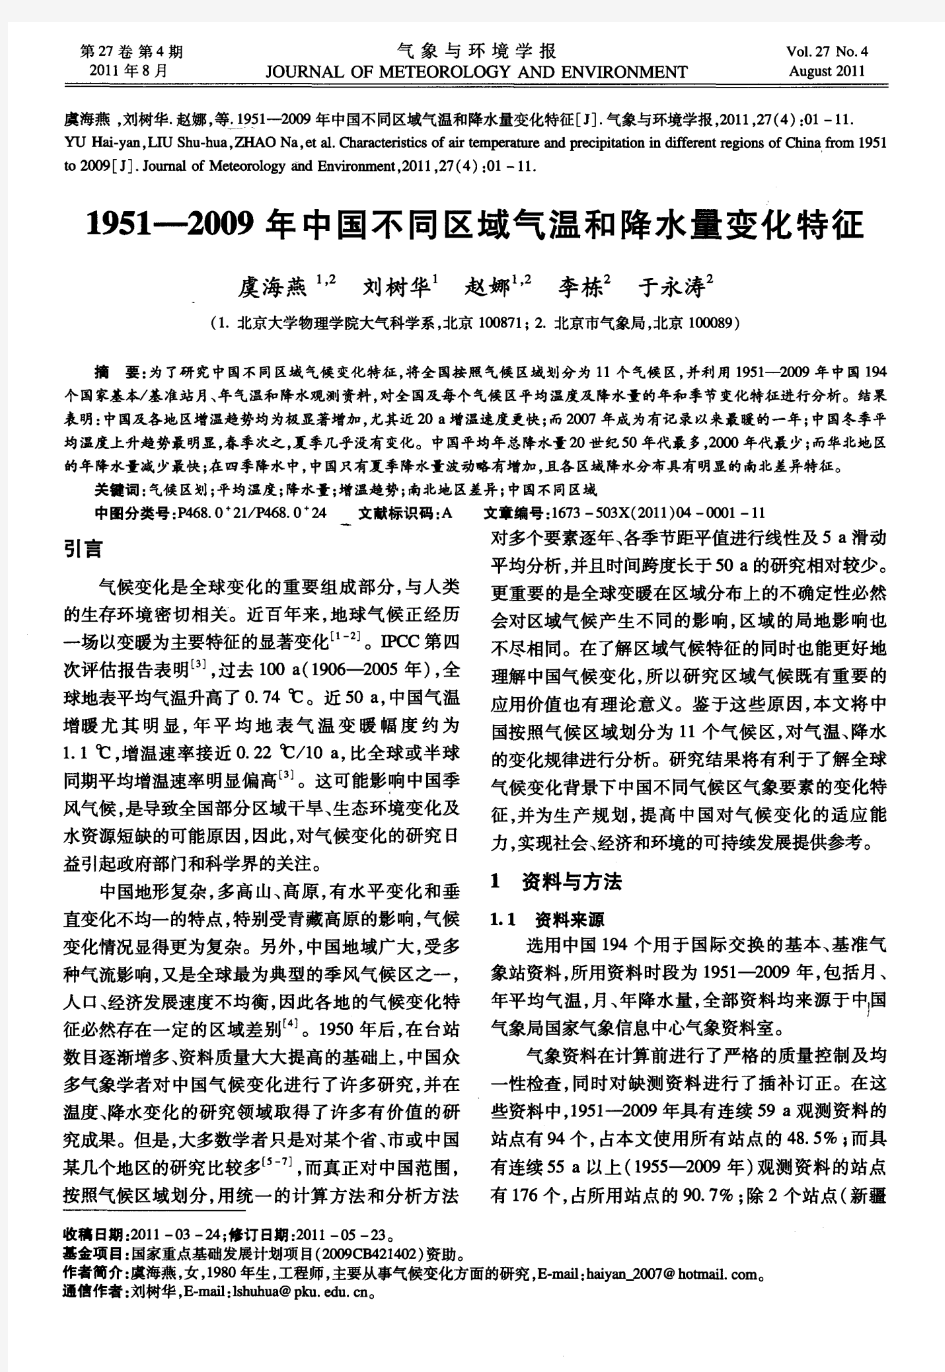 1951—2009年中国不同区域气温和降水量变化特征